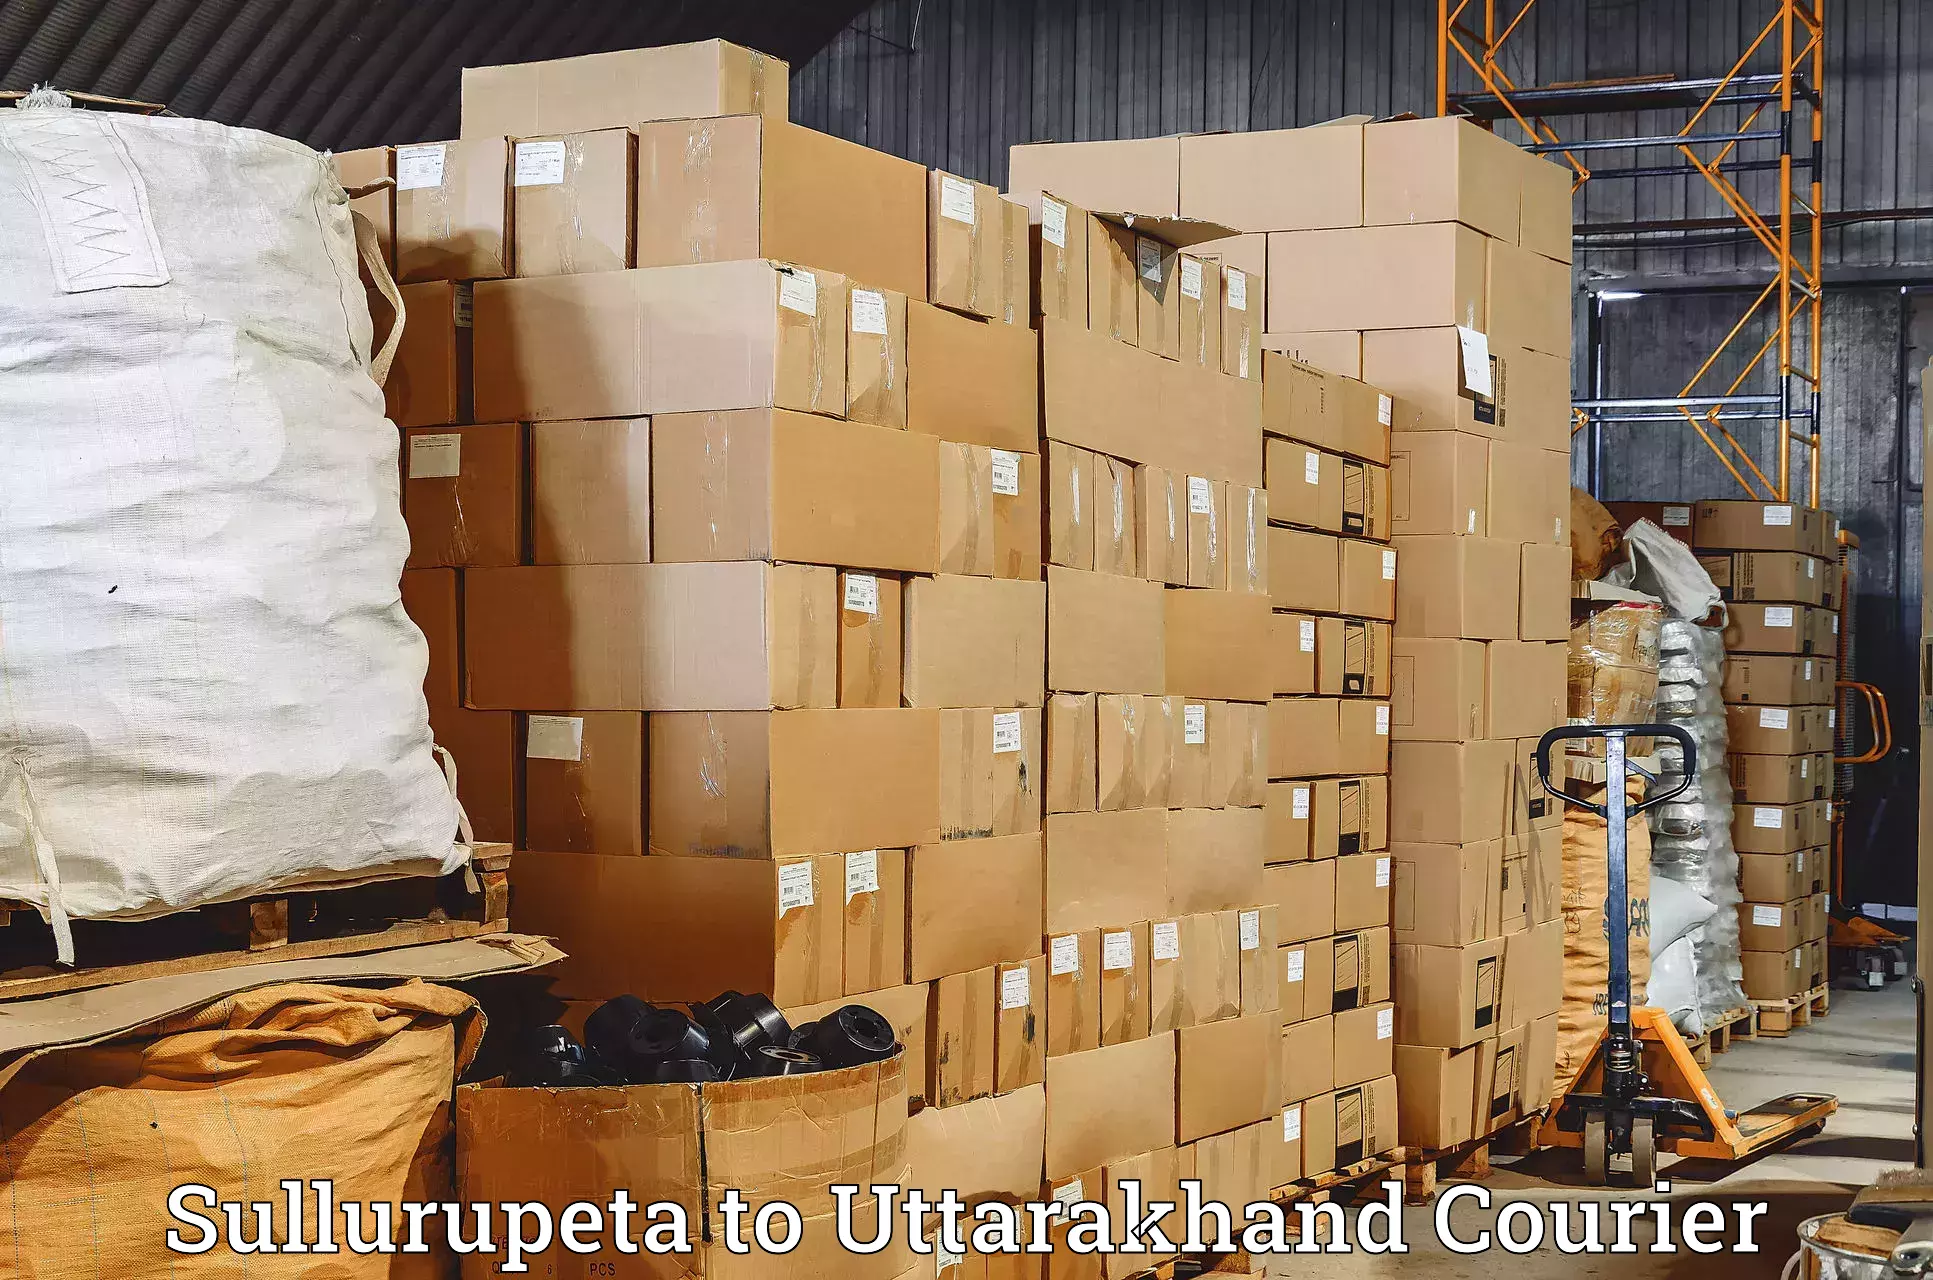 Delivery service partnership Sullurupeta to Rishikesh